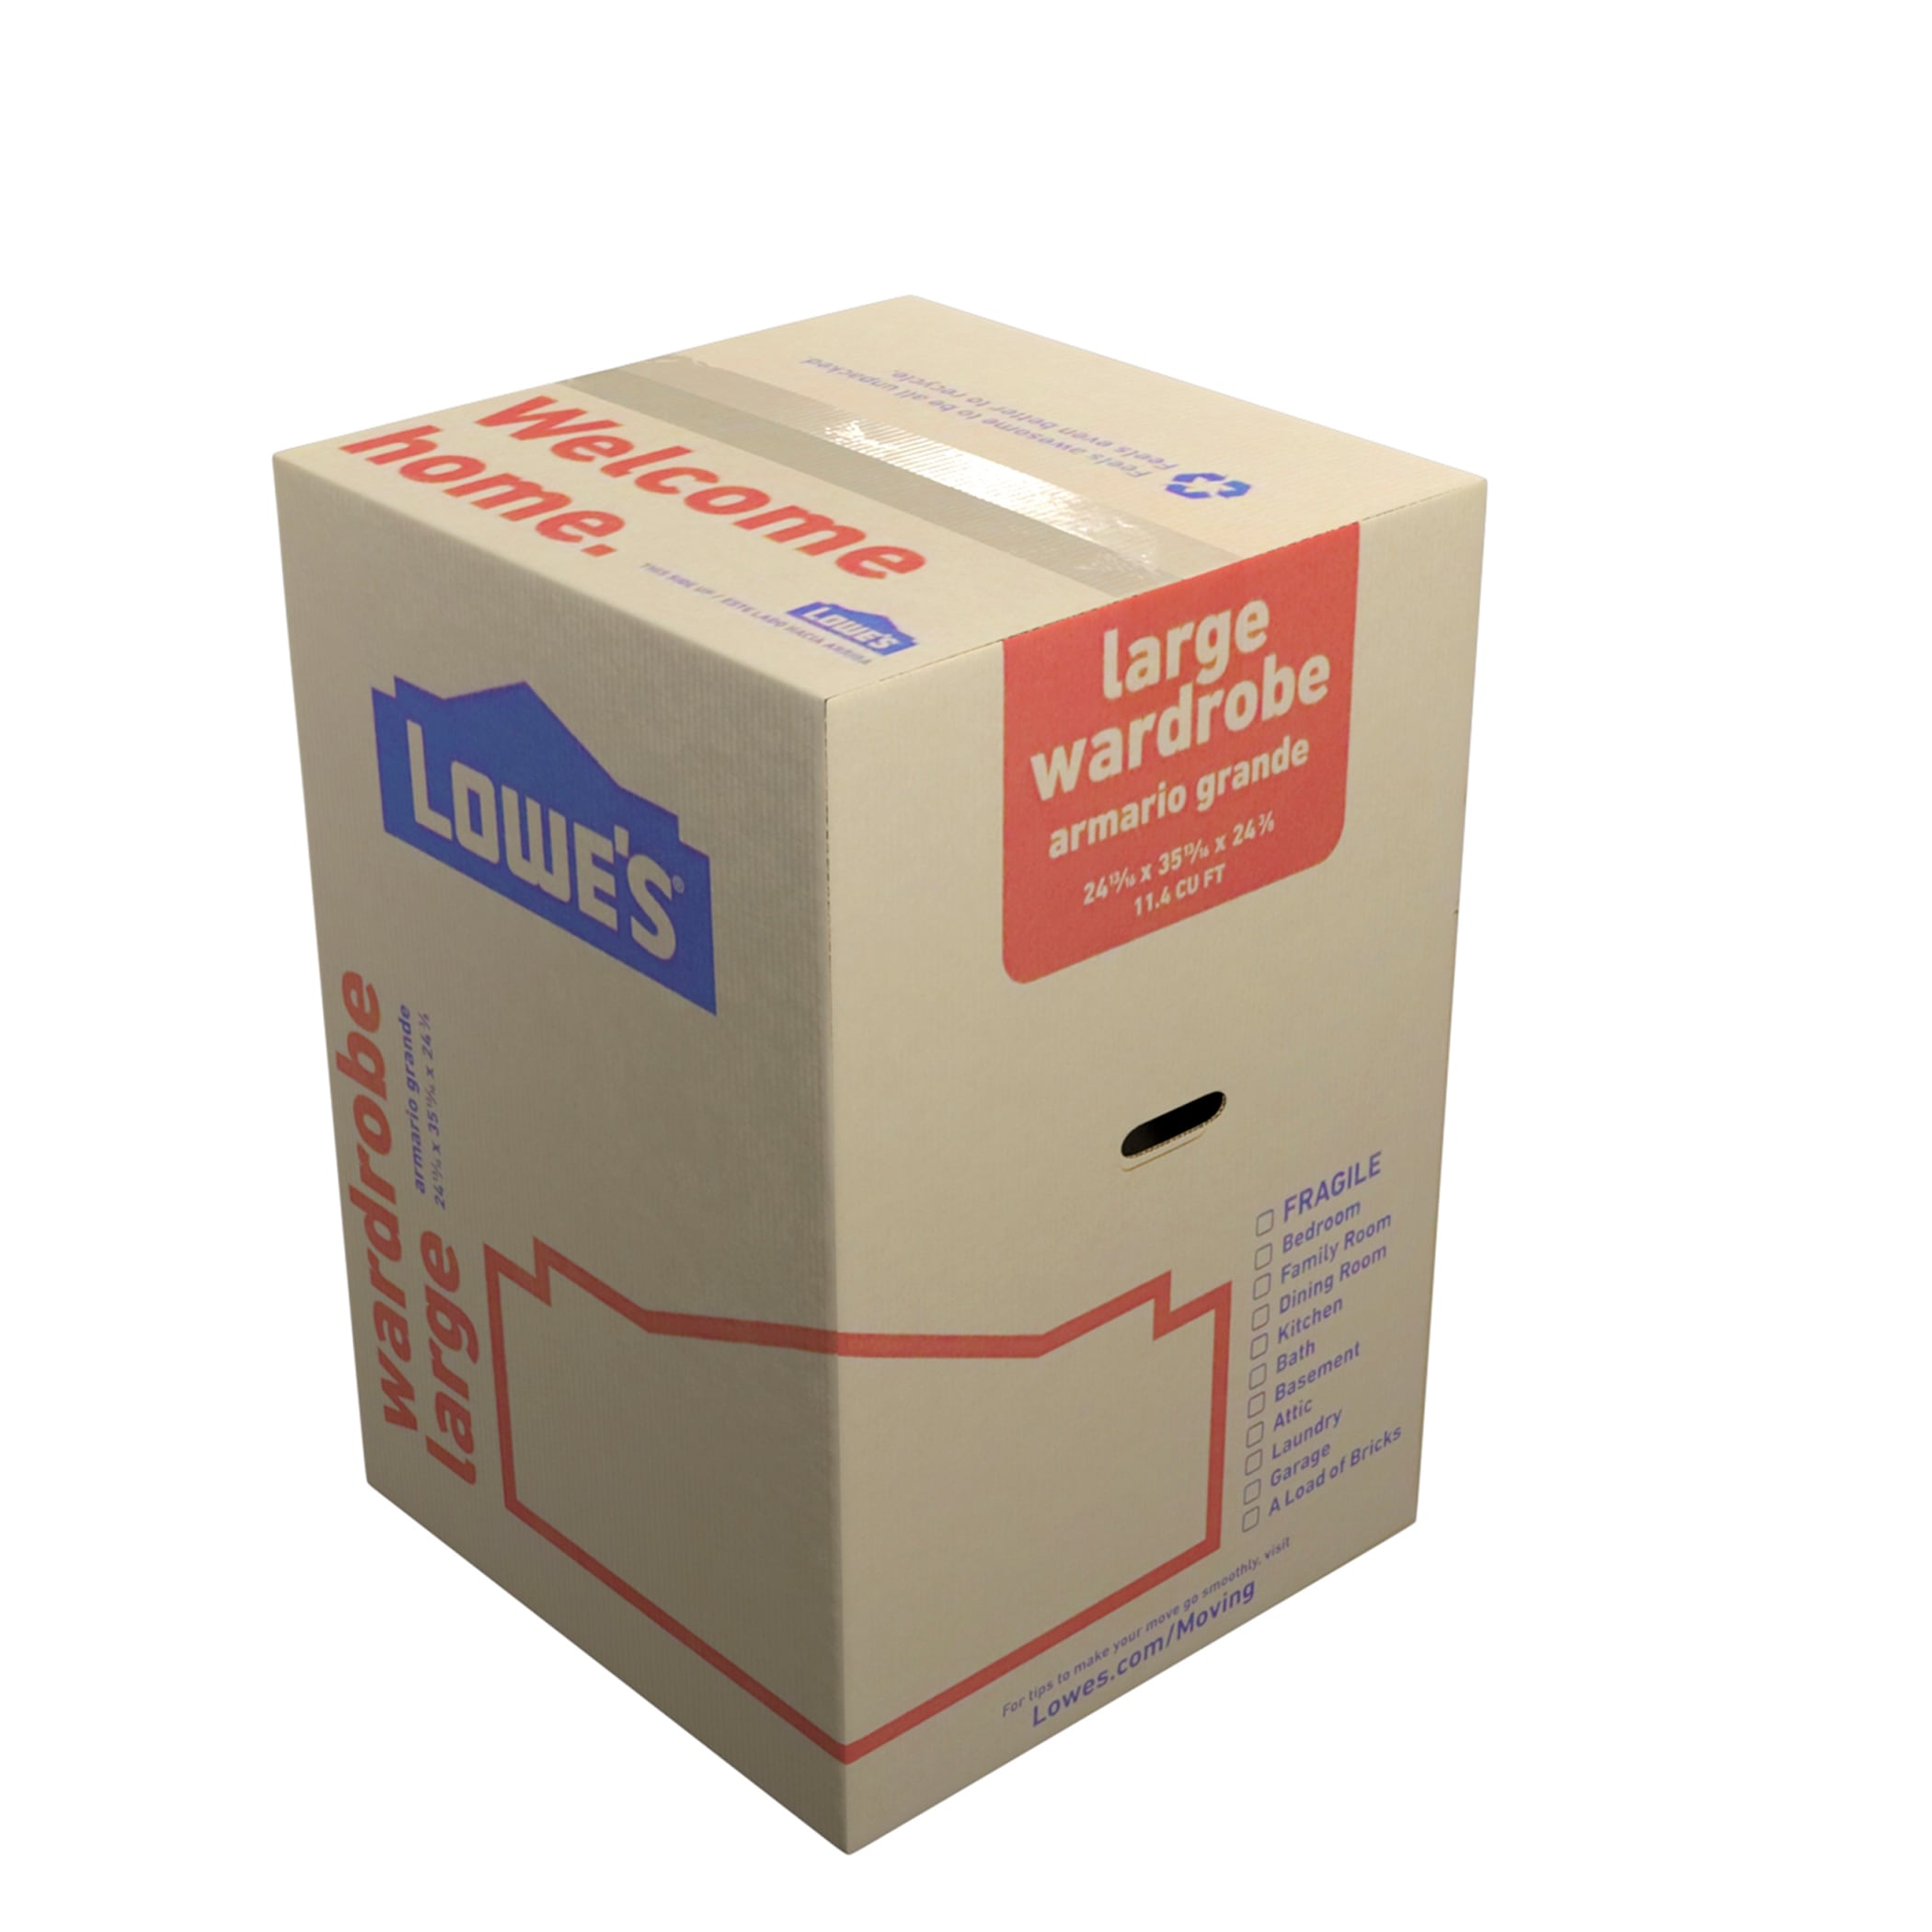 Lowe's 18-in W x 16-in H x 18-in D Classic Medium Cardboard Moving